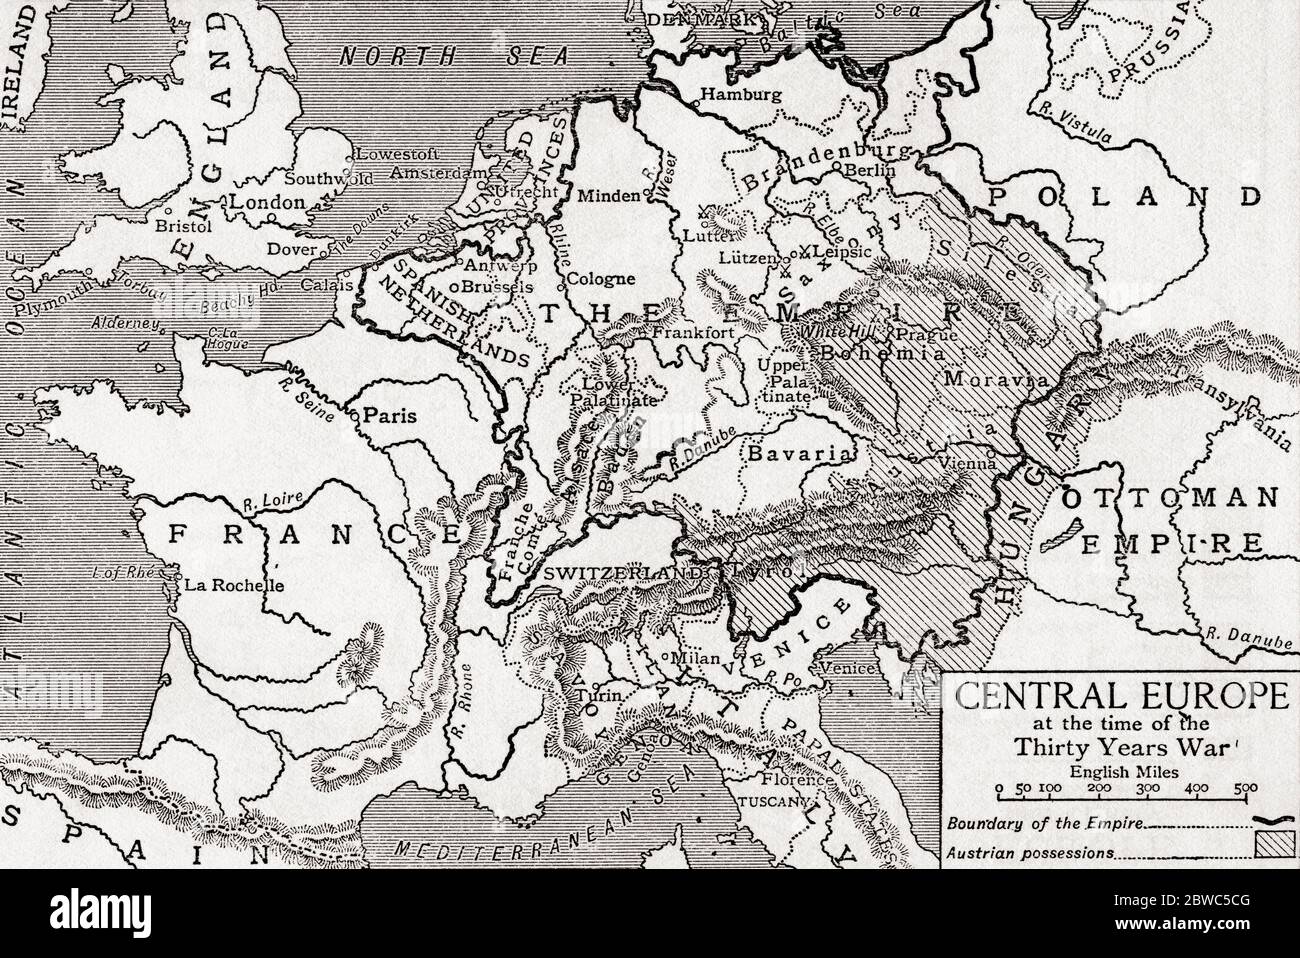 Karte von Mitteleuropa zur Zeit des Dreißigjährigen Krieges. Aus Großbritannien und ihren Nachbarn, 1485 - 1688, veröffentlicht 1923. Stockfoto